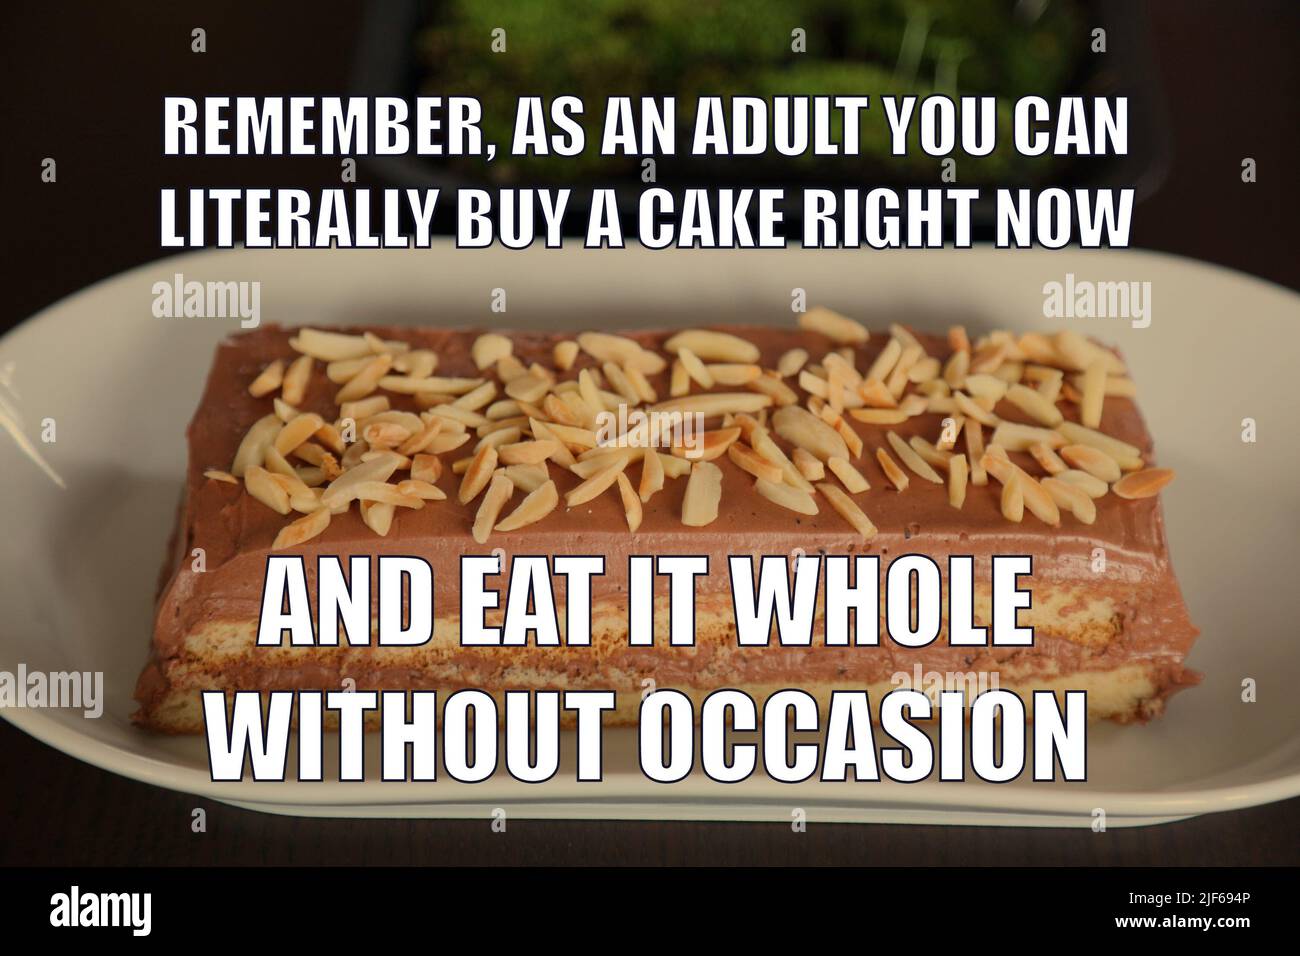 Cake Funny meme pour le partage de médias sociaux. Humour sur le fait d'être adulte. Banque D'Images